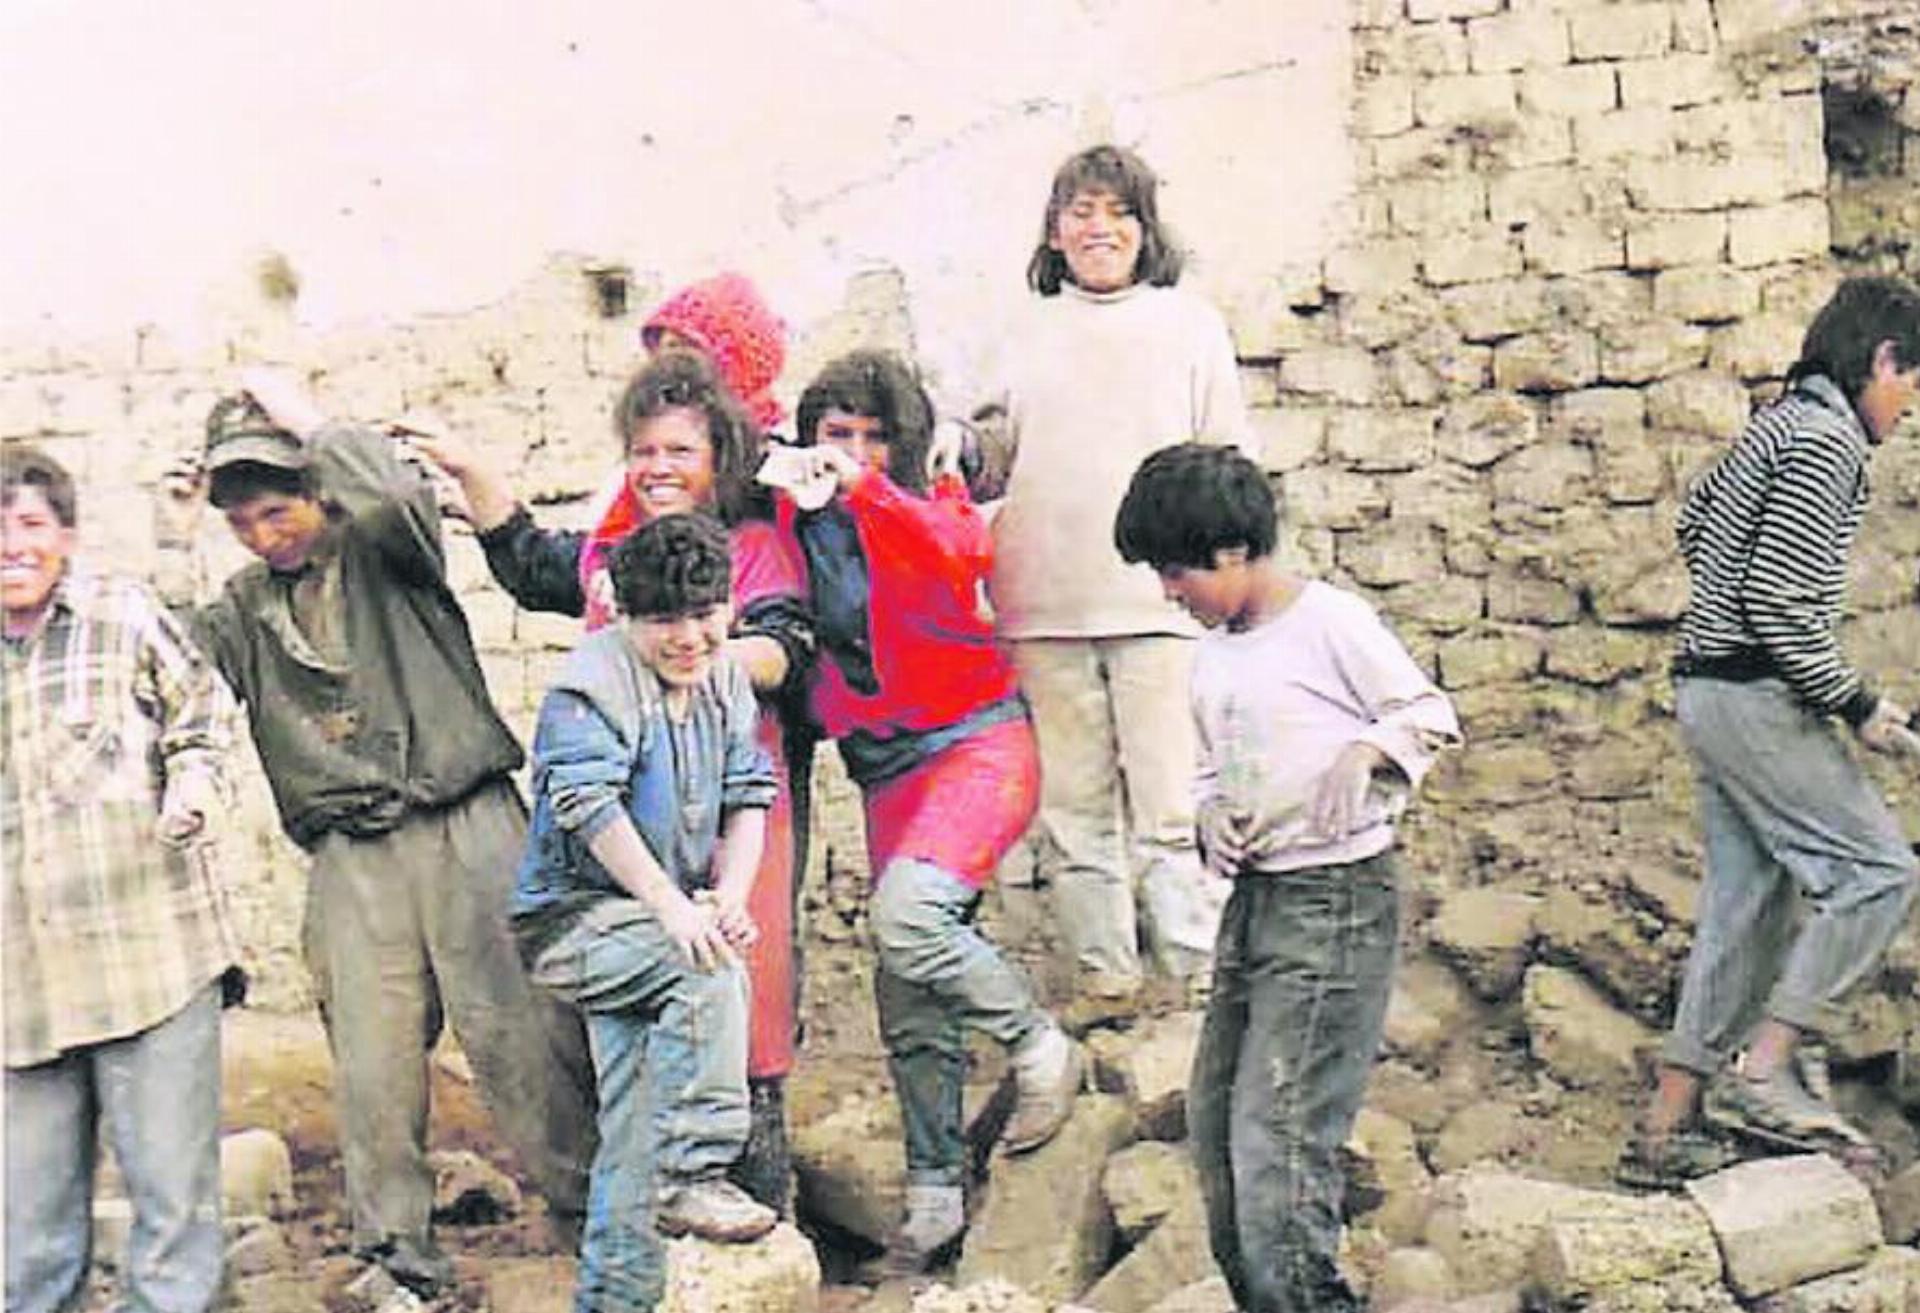 Strassenkinder in Bolivien. FOTO: ZVG